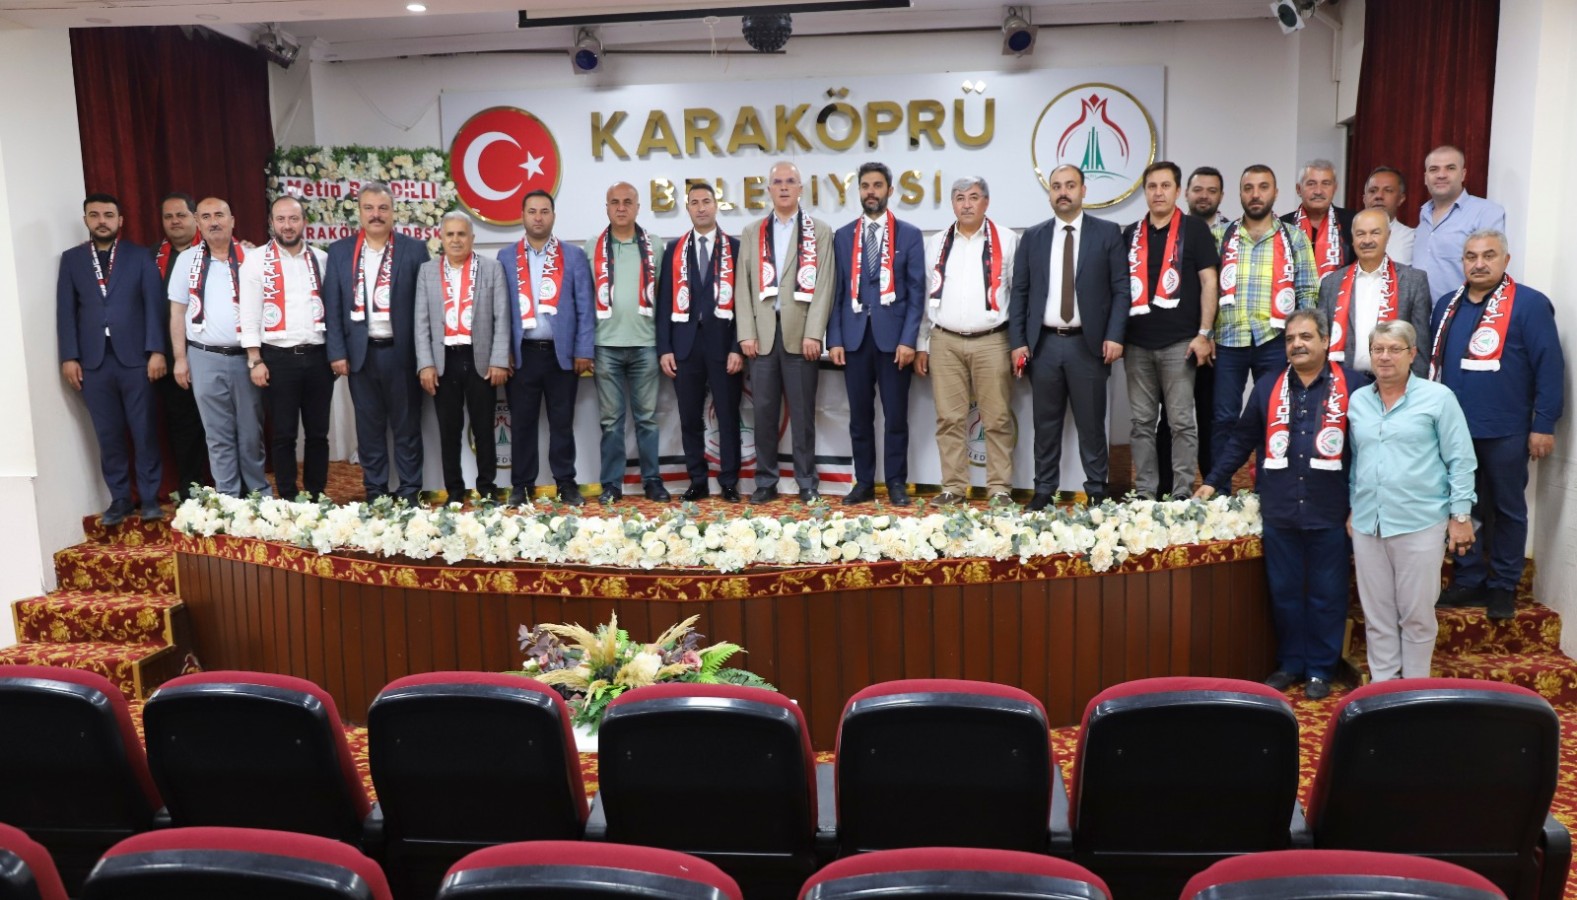 Karaköprü Belediyespor'da yeni başkan Osman Uludağ oldu;